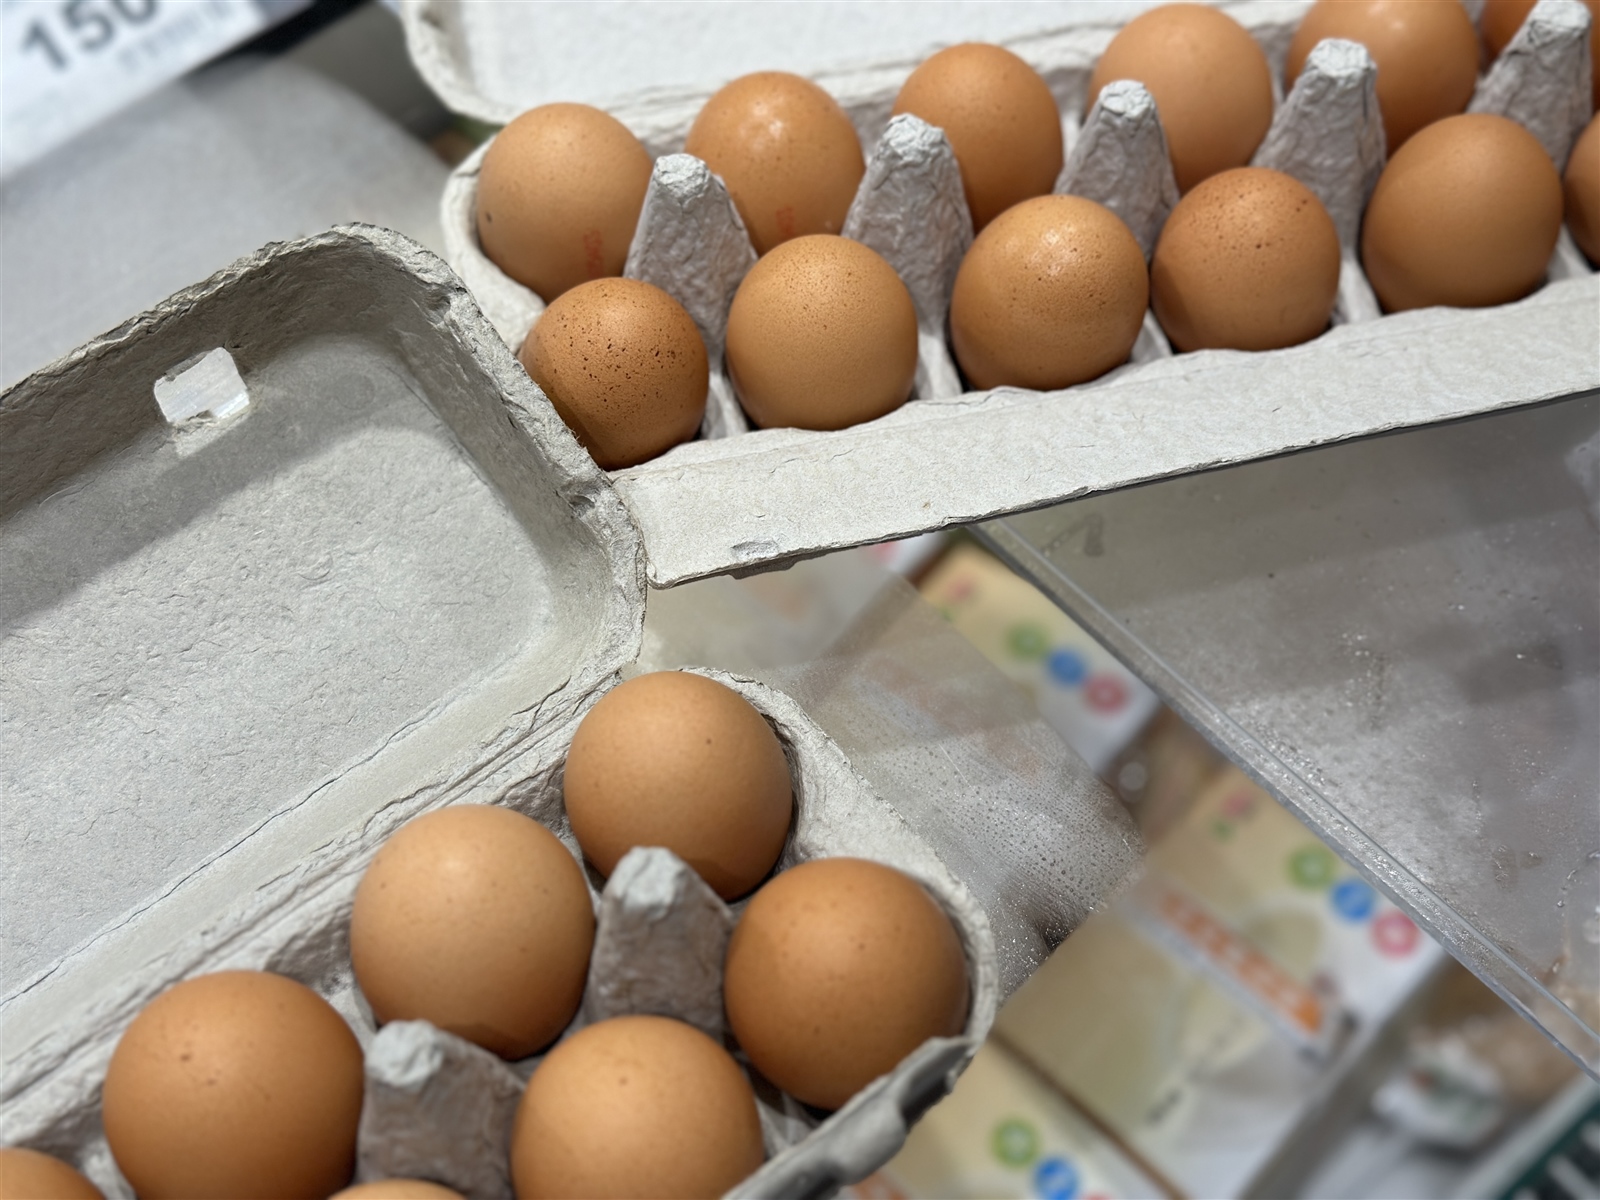 振興醫院營養師營養師陳韻婷表示，蛋殼顏色和雞隻的品種或餵養的飼料相關，和營養價值沒有直接相關性。本報資料照片 